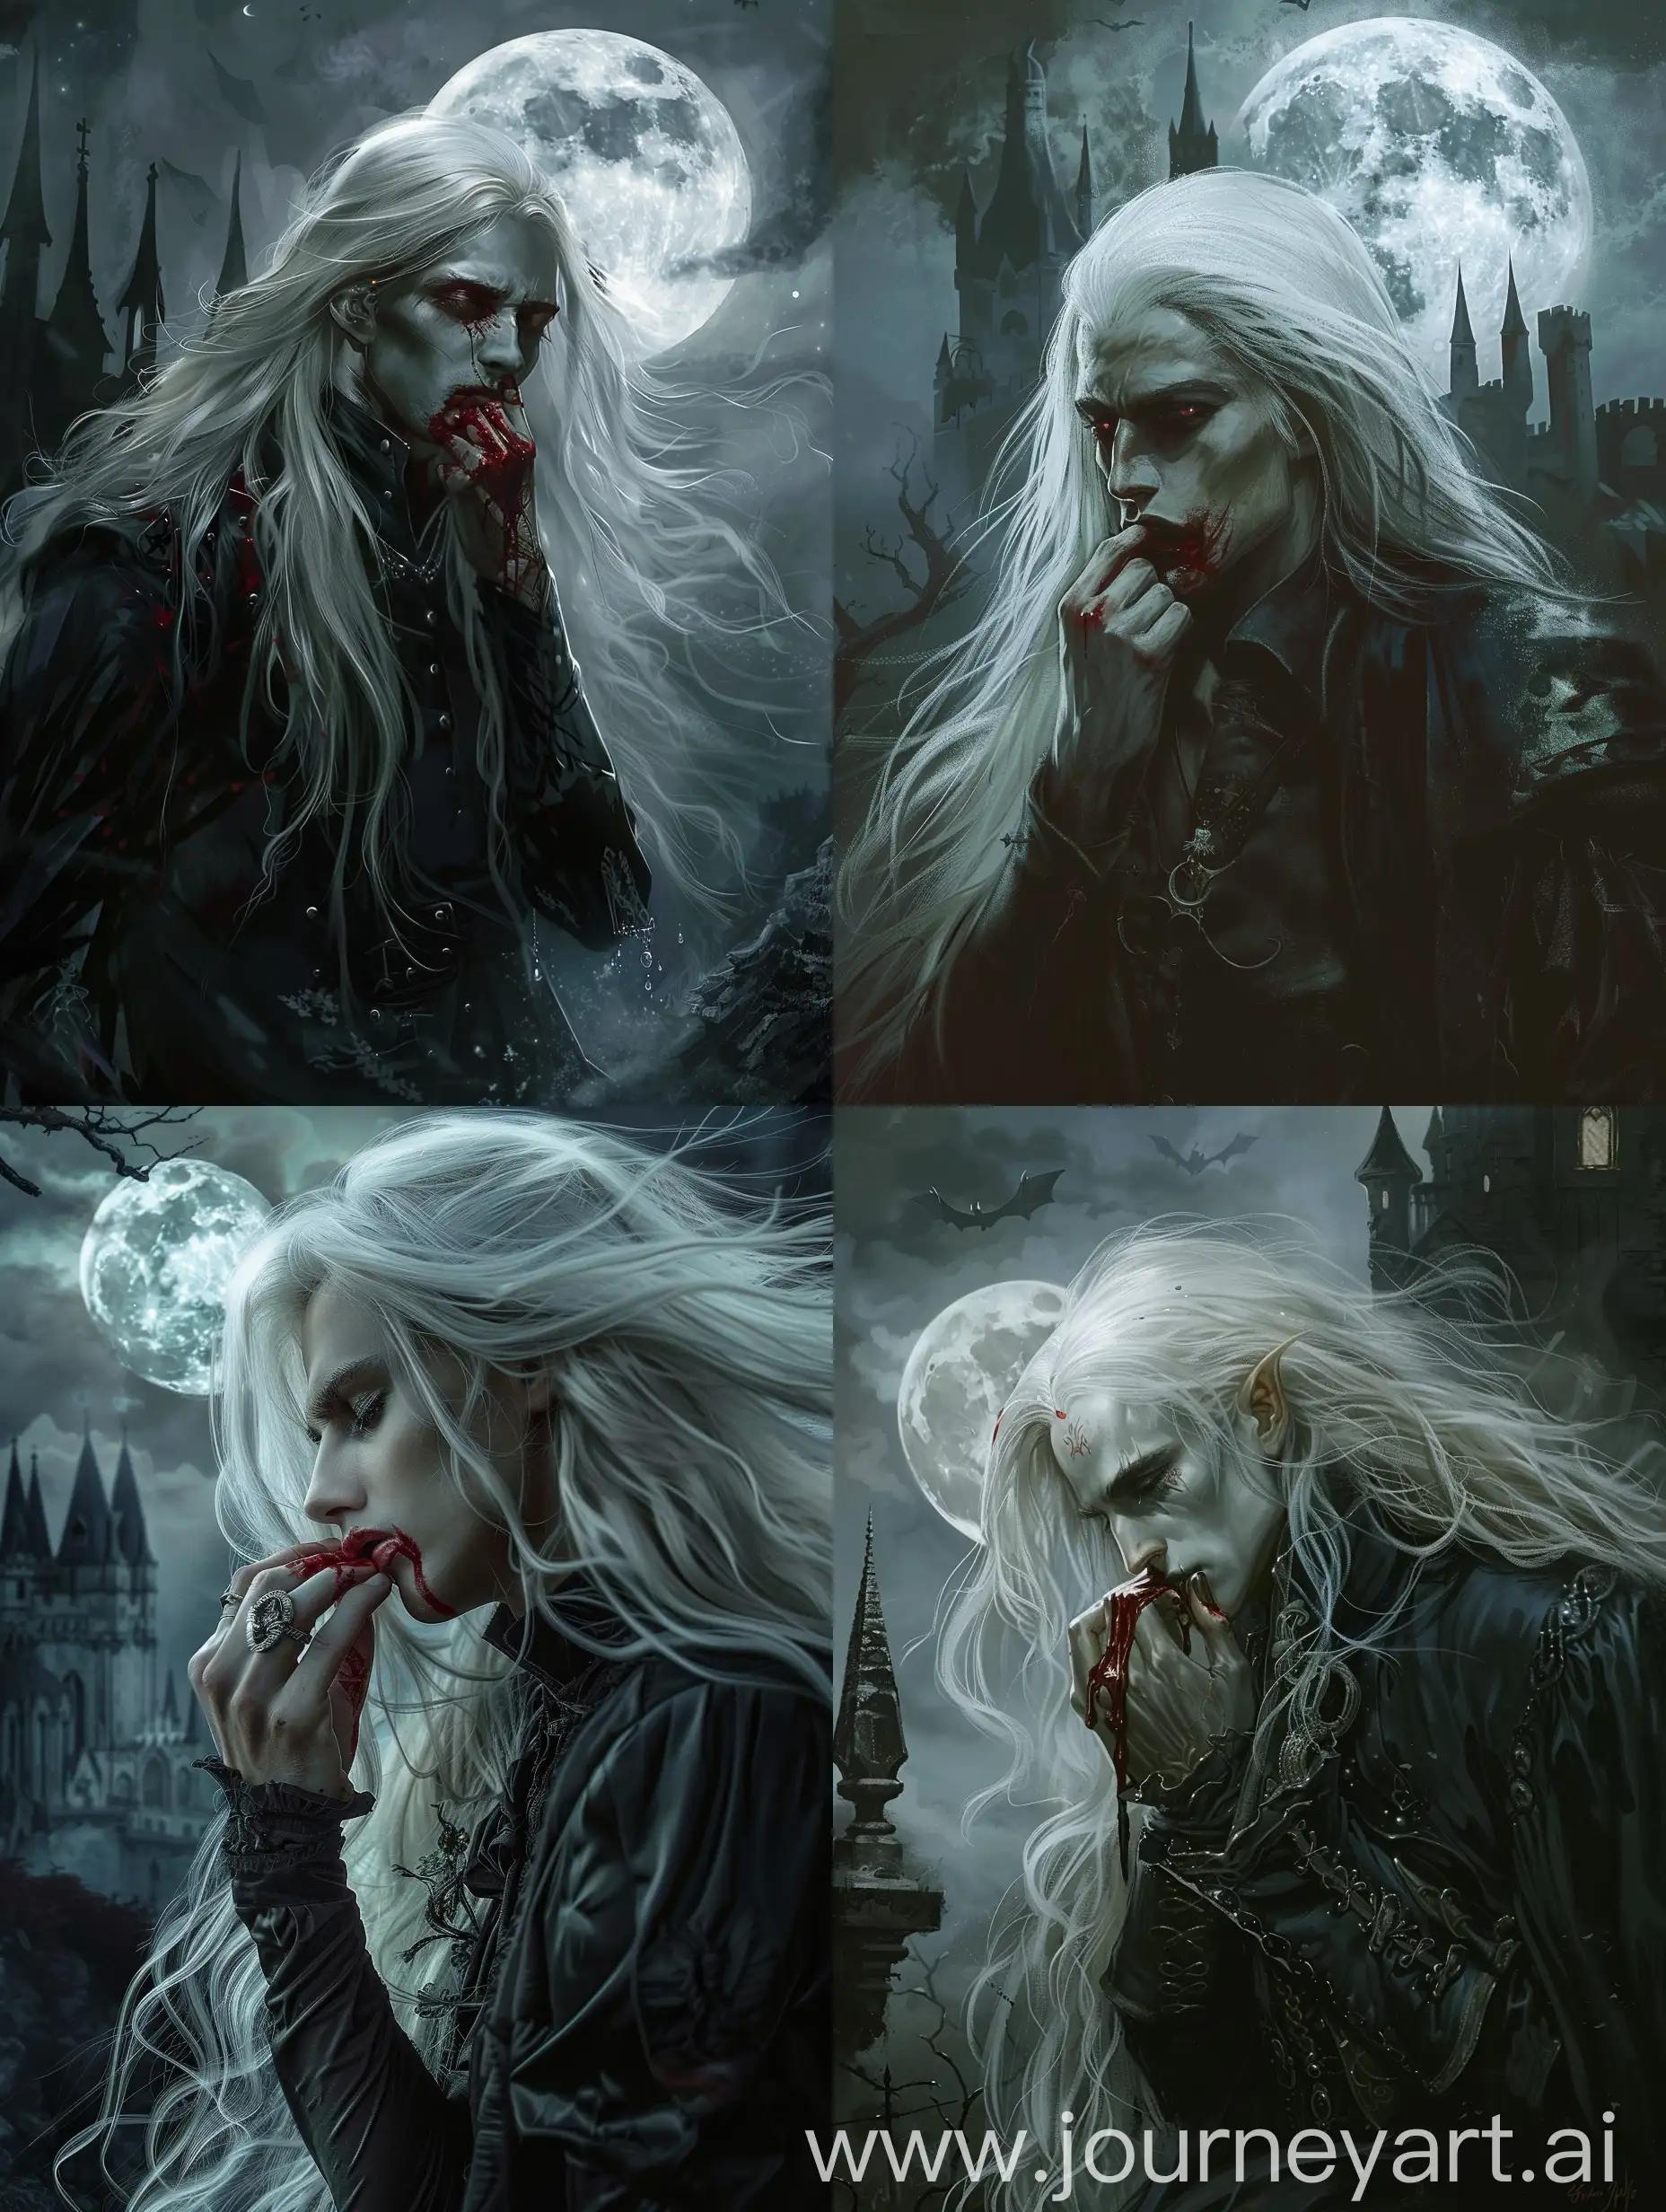 Молодой мужчина-вампир с длинными белыми волосами вытирает кровь с губ, на фоне полной луны и шпилей замка